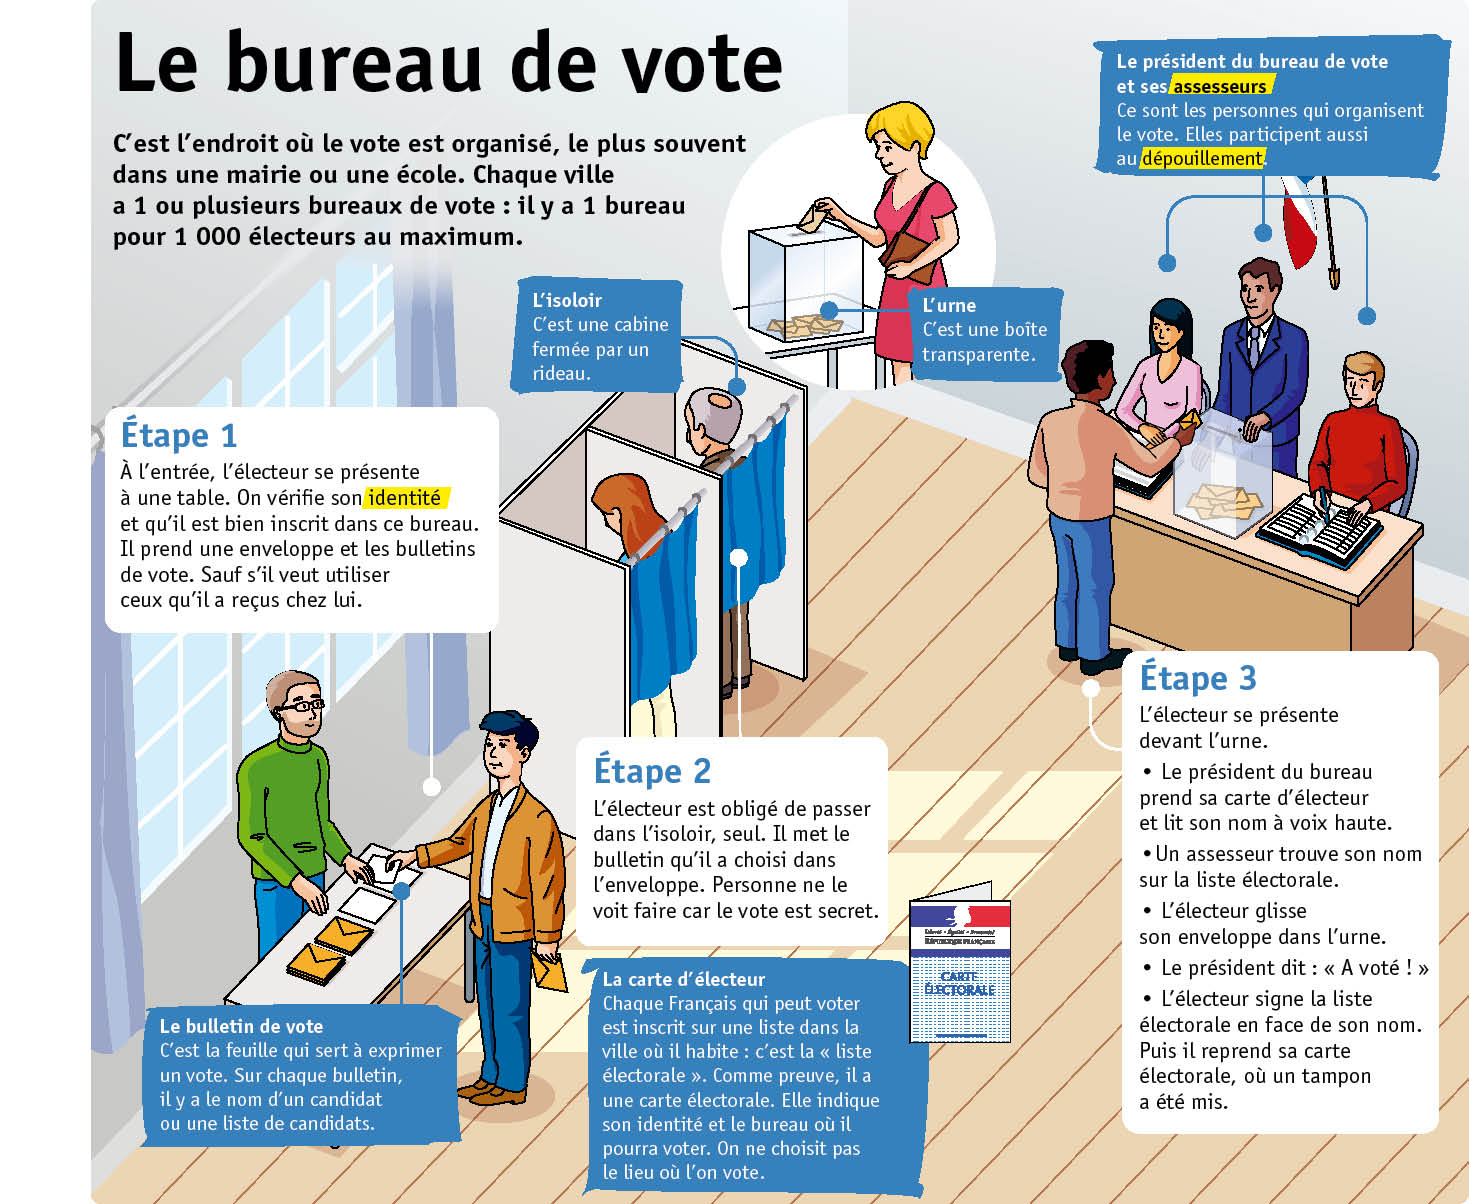 brandwonden Pennenvriend doe niet Le bureau de vote | Fiches exposés Le Petit Quotidien | Playbac Presse  Digital